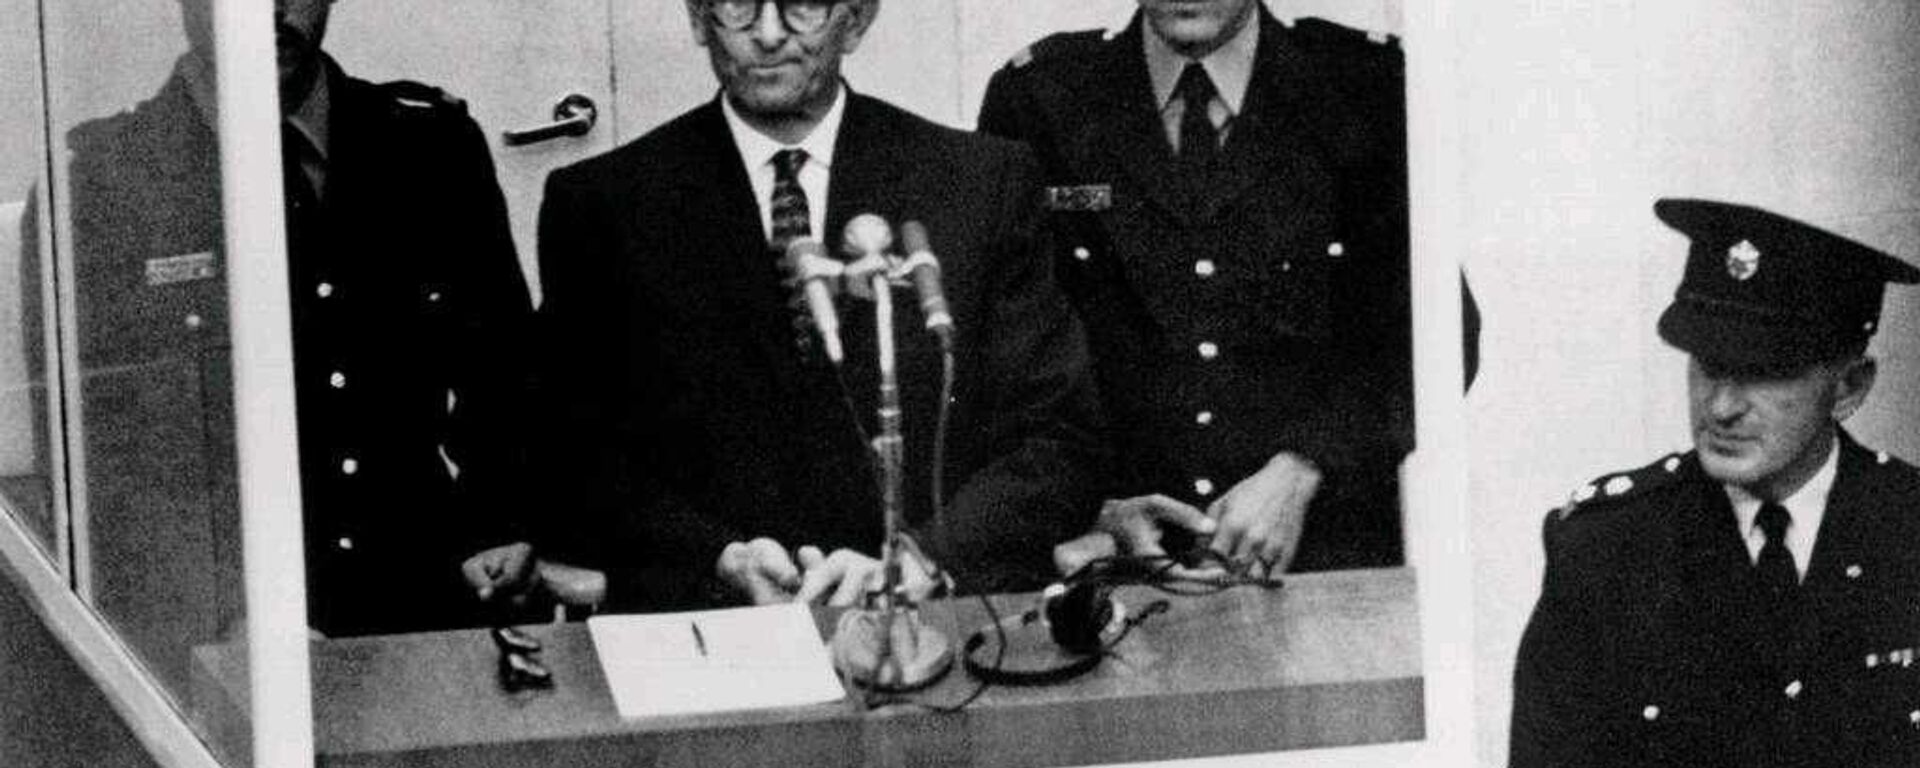 Суд над Адольфом Эйхманом в Израиле. 1961 год - Sputnik Latvija, 1920, 23.05.2021